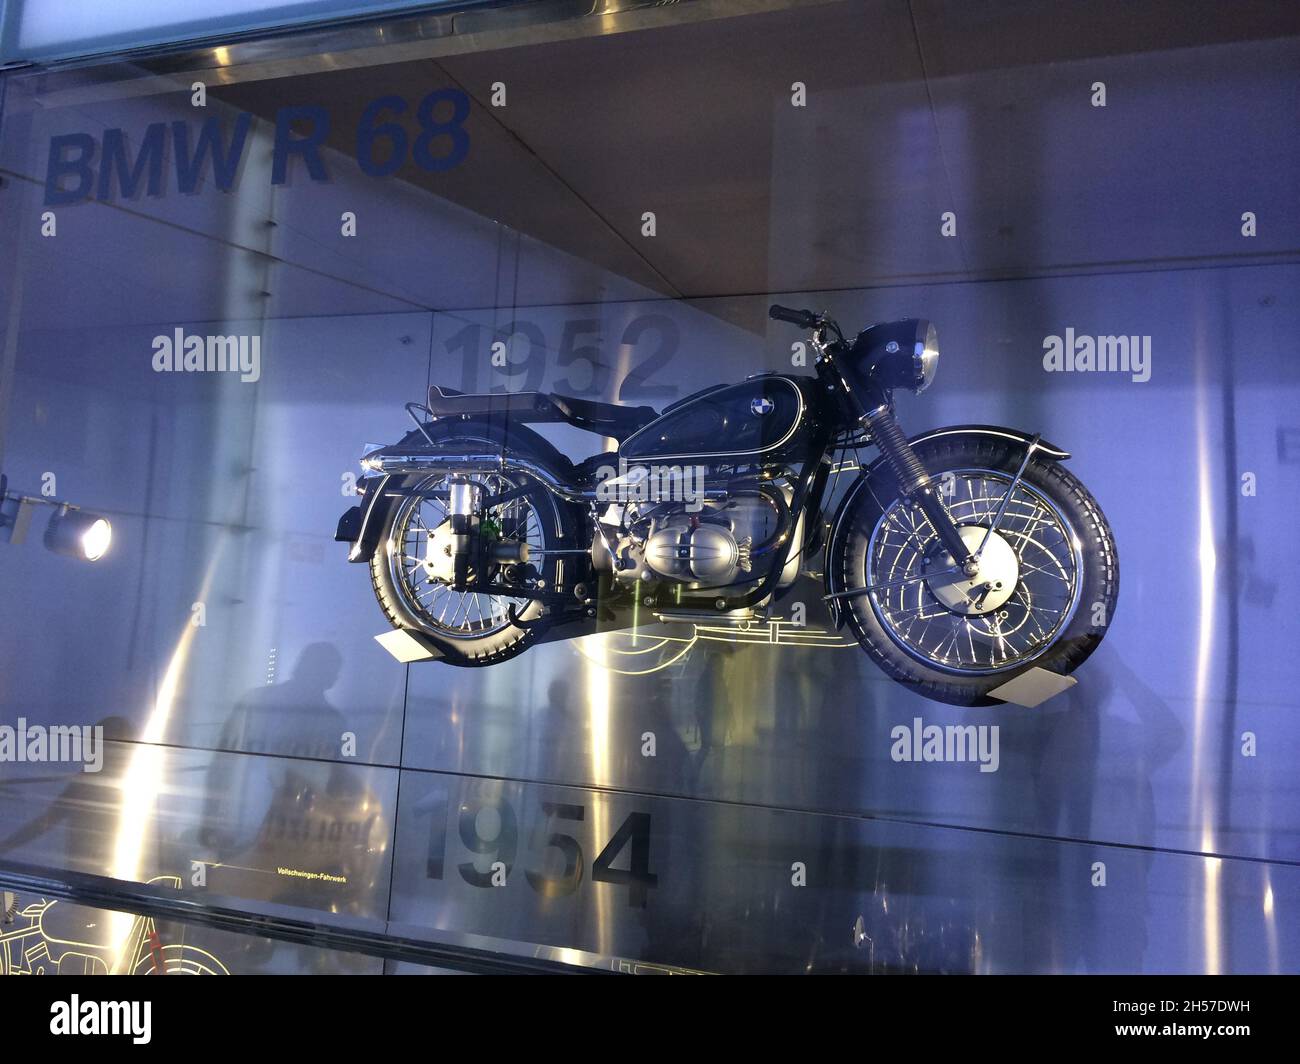 BMW R 68 Motorrad: Baujahr 1952. Es ist ein Sportmotorrad, das von BMW von  1952 bis 1954 produziert wurde. BMW Museum, München, Deutschland  Stockfotografie - Alamy